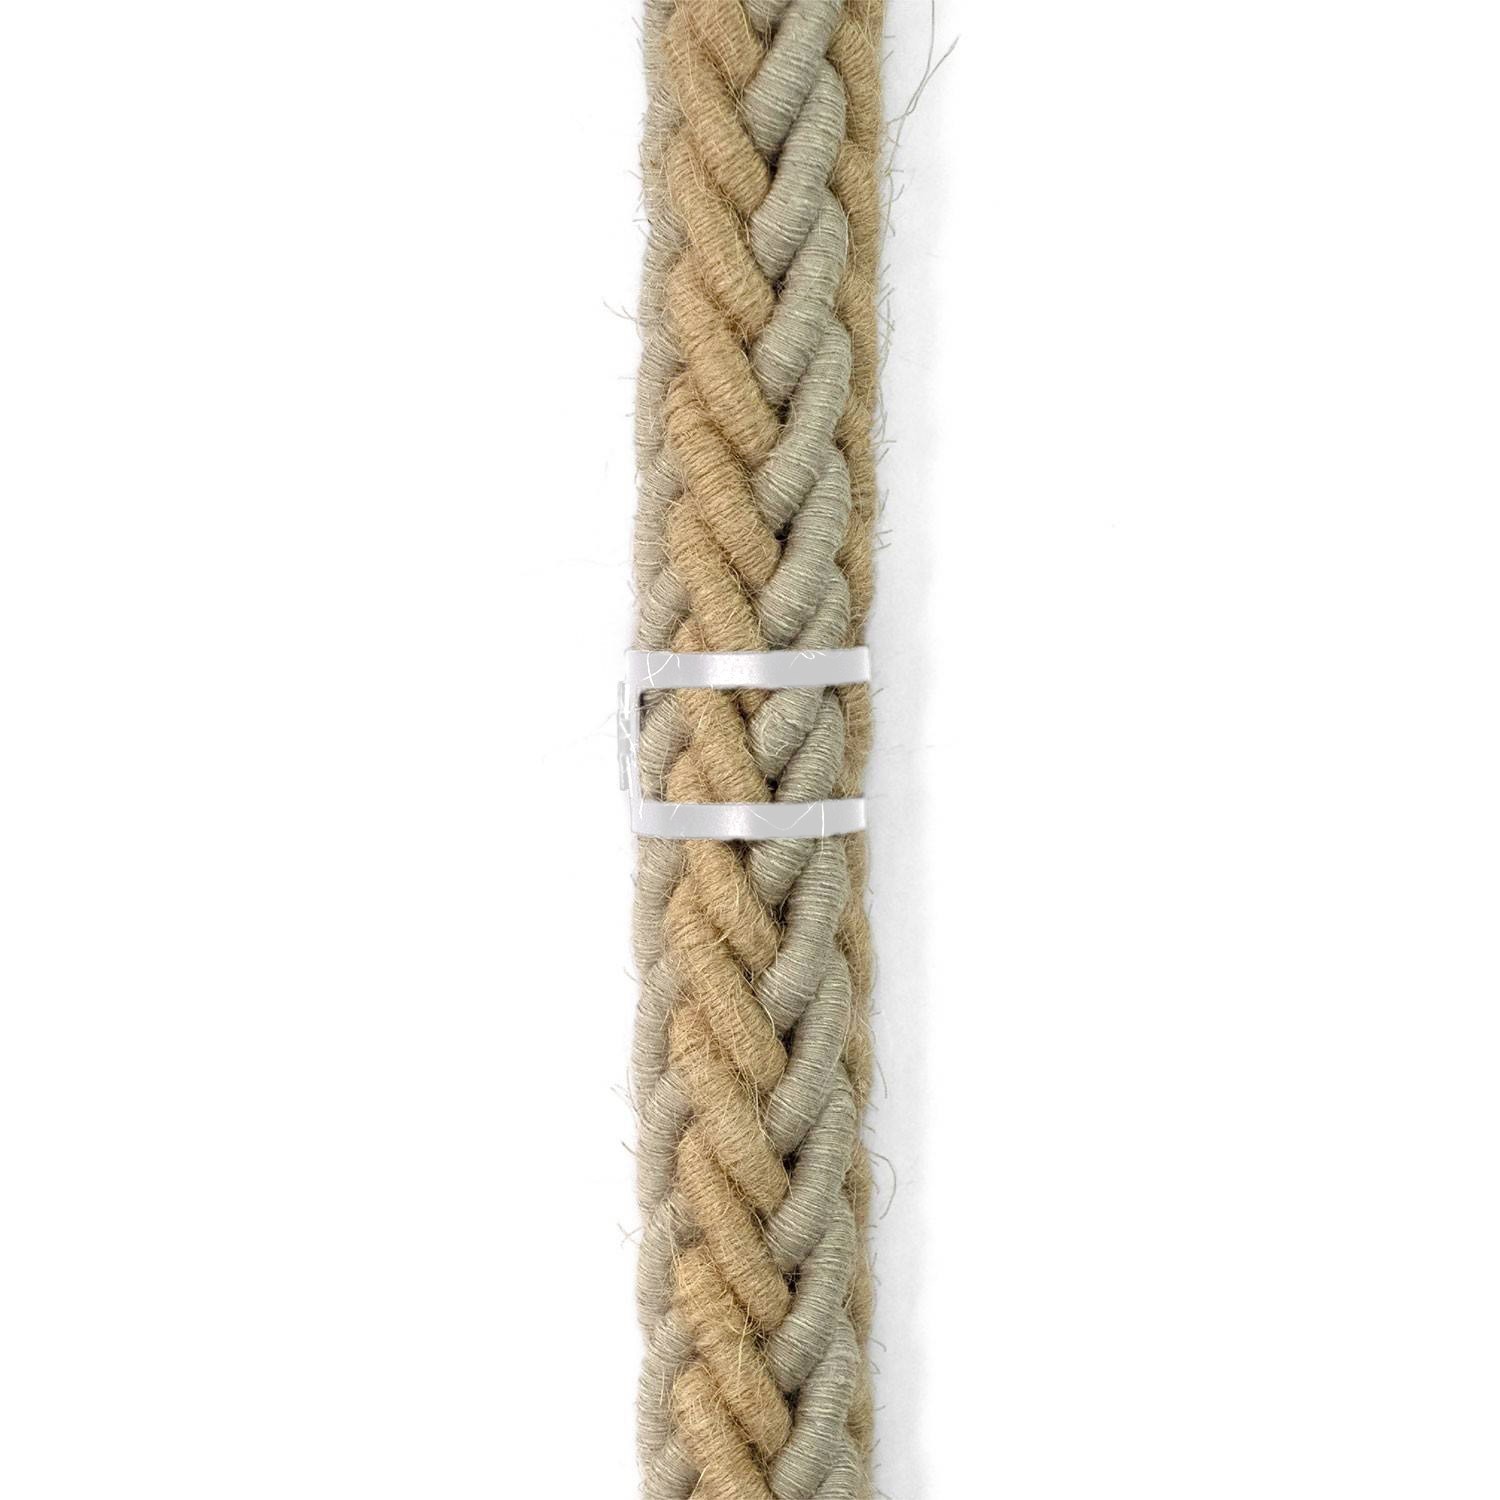 Clip de sujeción de cable metálico para cordón de 30 mm de diámetro